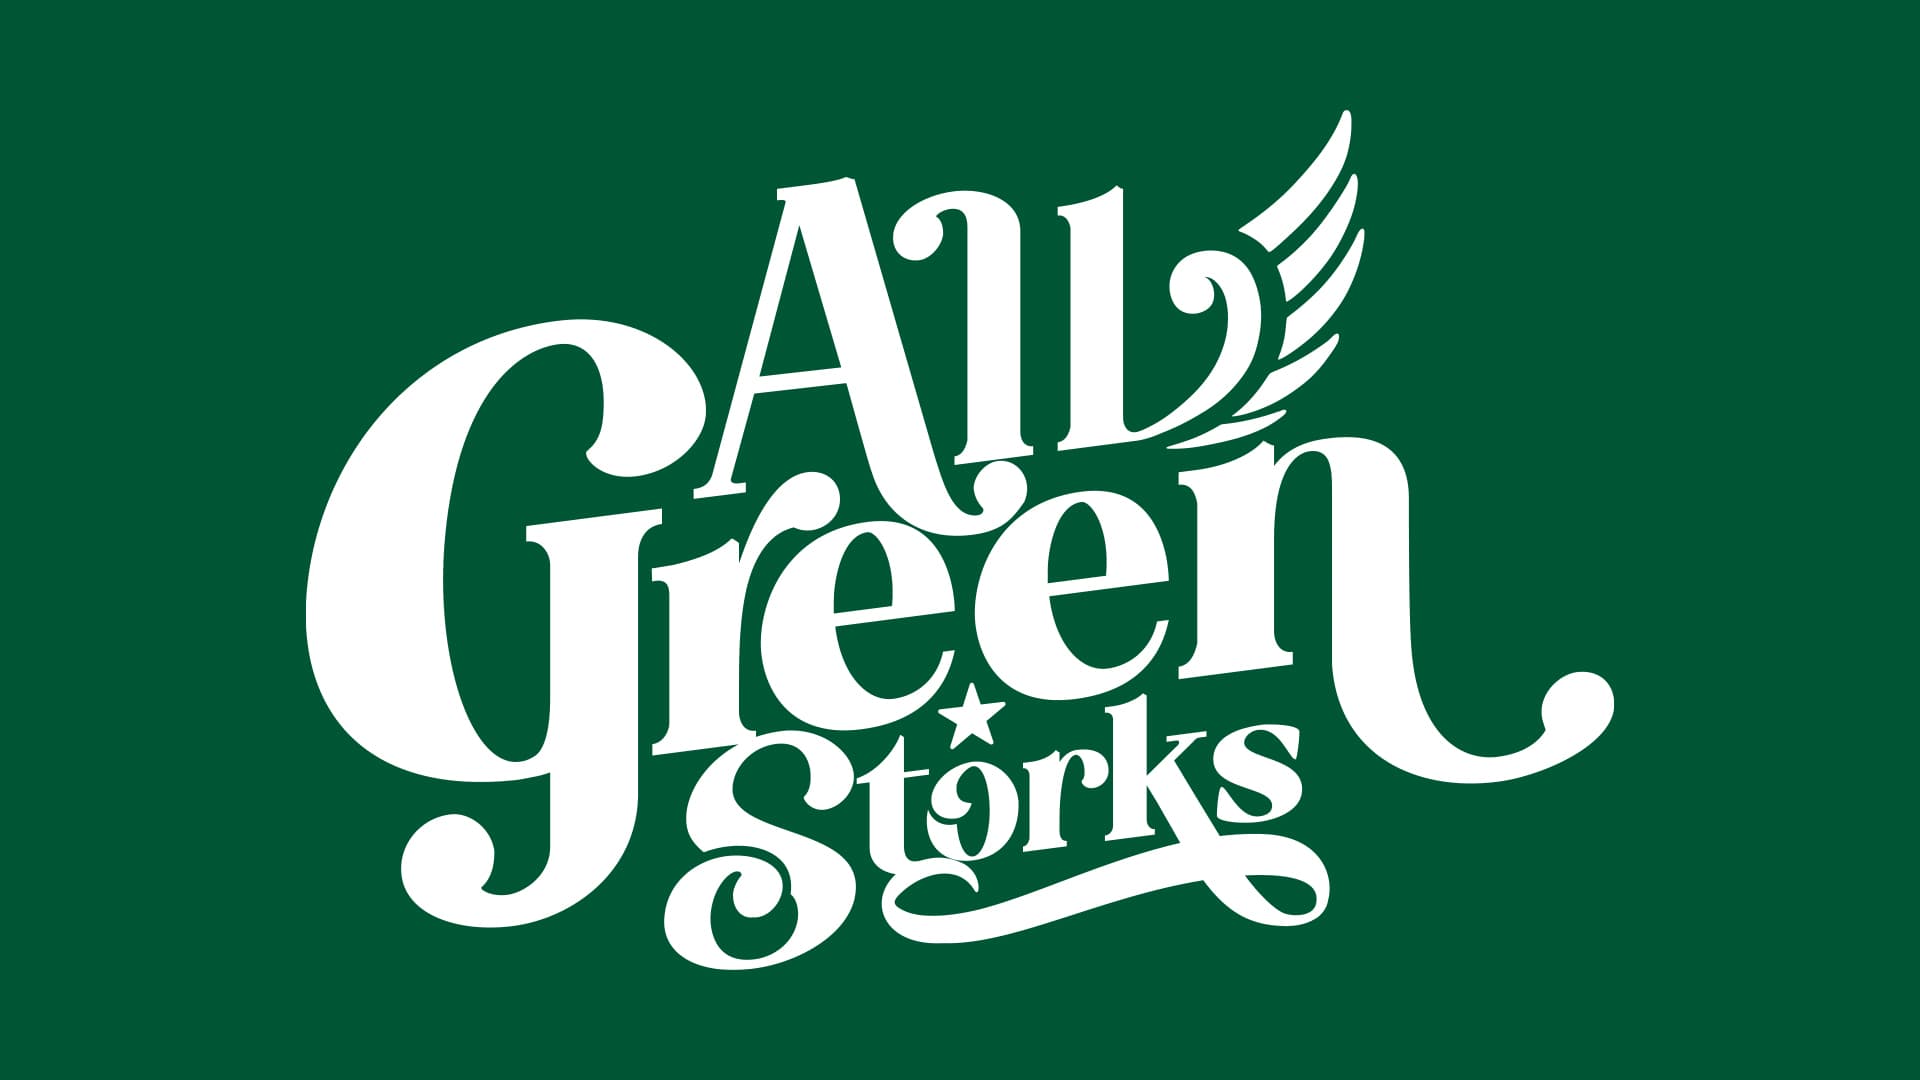 ALL GREEN STORKS